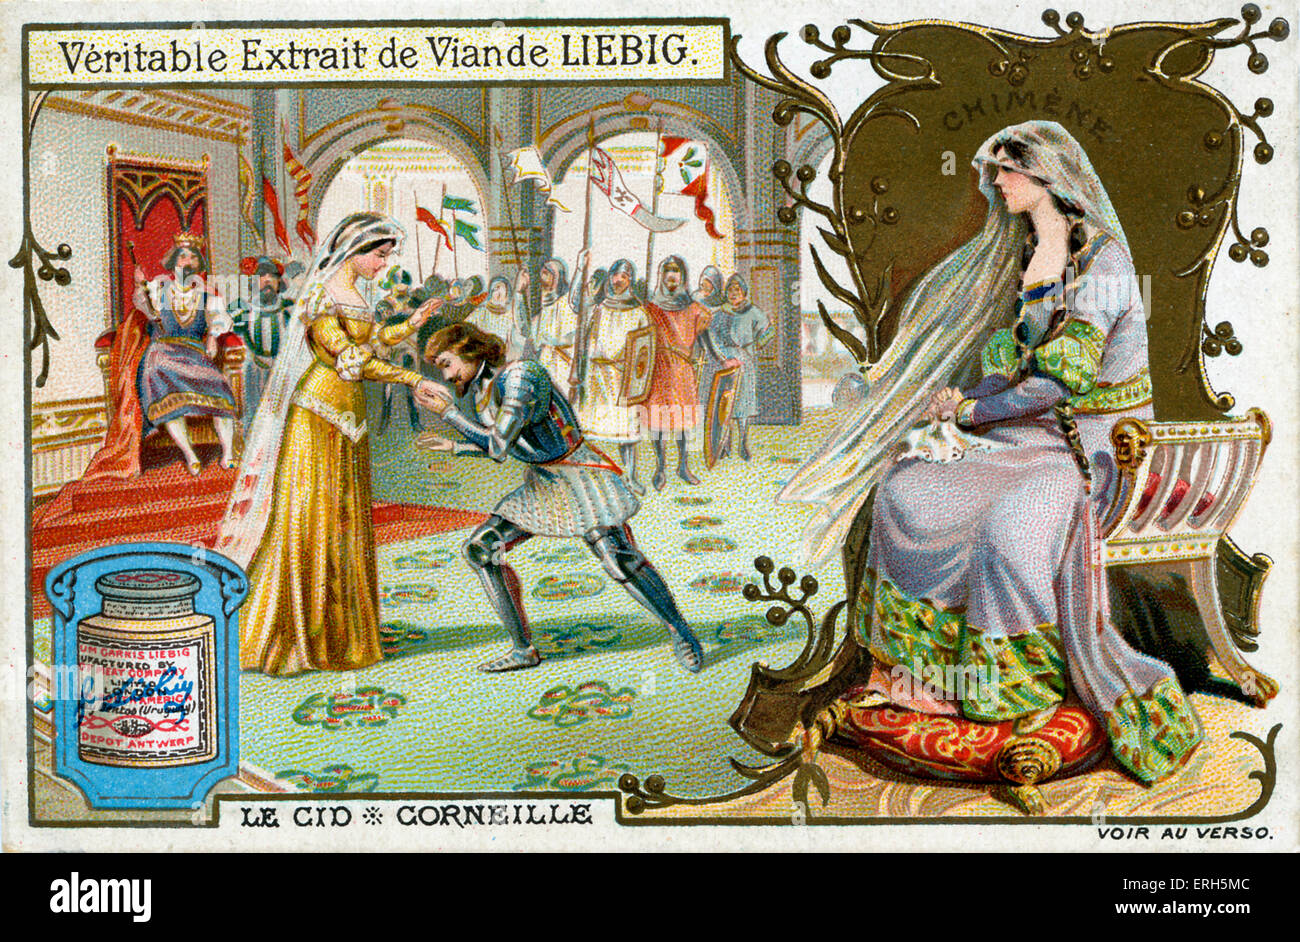 Le Cid von Corneille - Abbildung auf Liebig Fleisch Extrakt Sammelkartenspiel. Szene mit Le Cid nimmt die Hand seiner Stockfoto